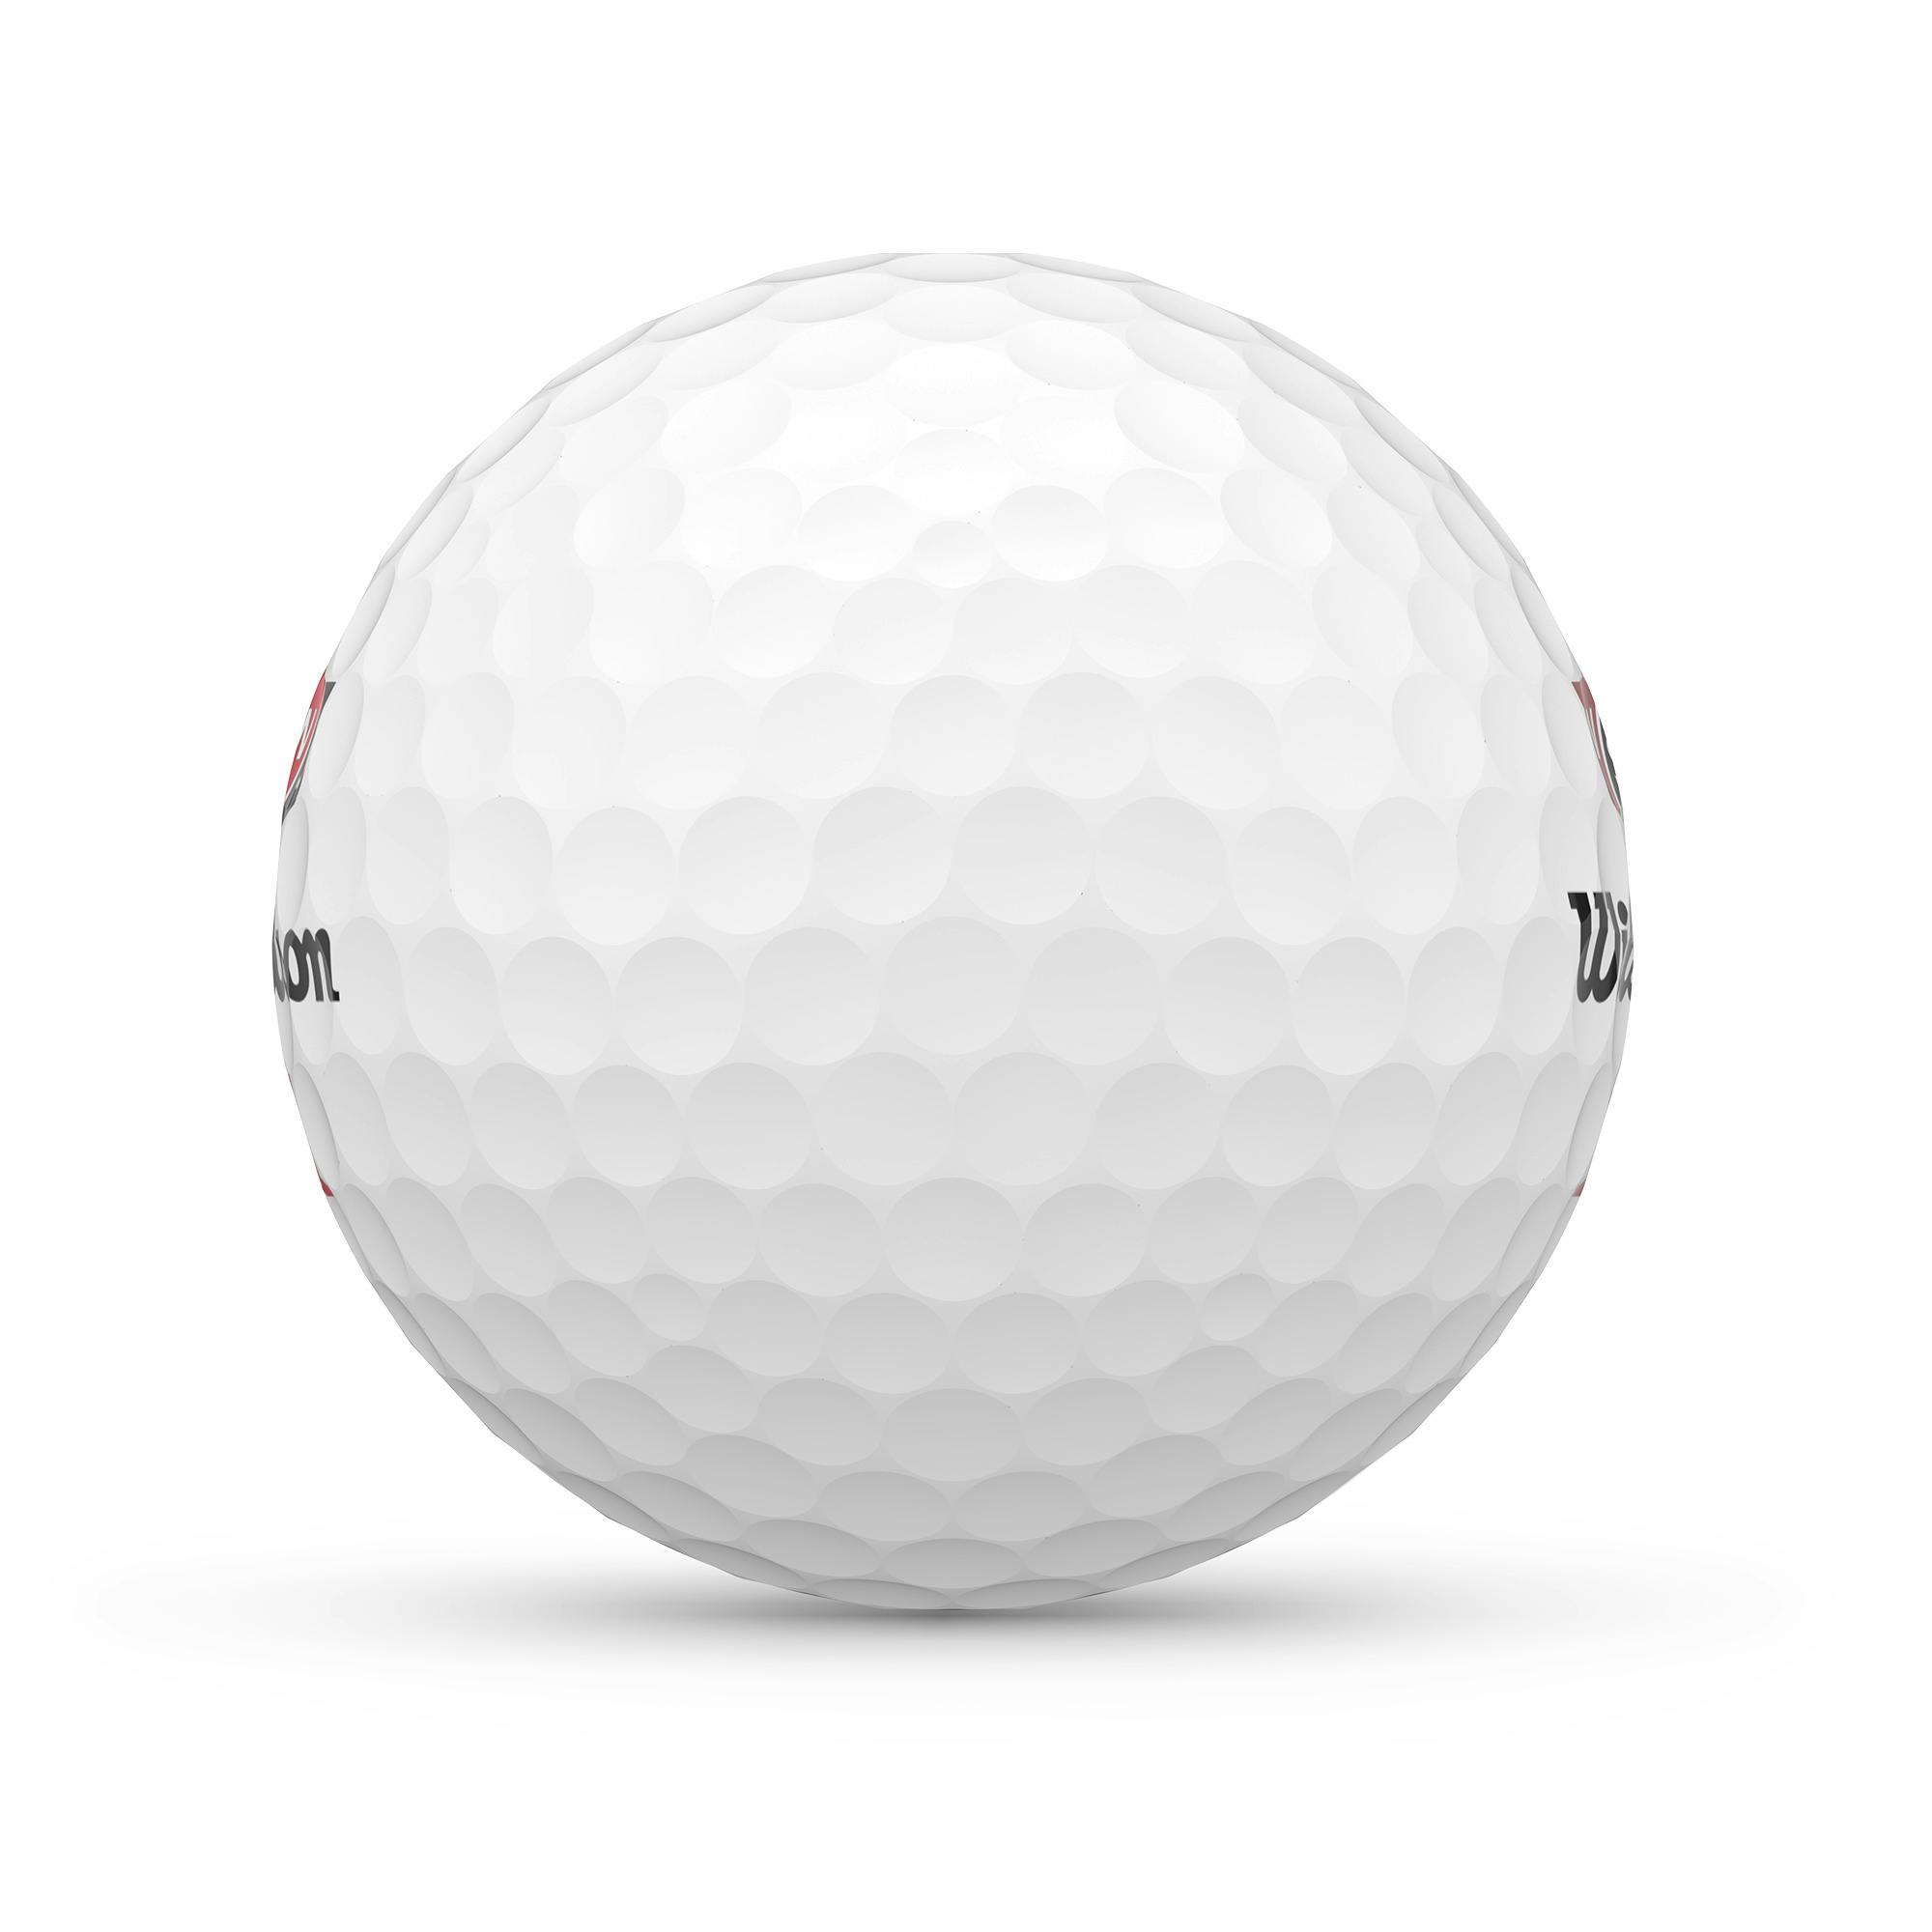 Wilson 2022 Duo Soft+ Golf Balls · White · One Dozen